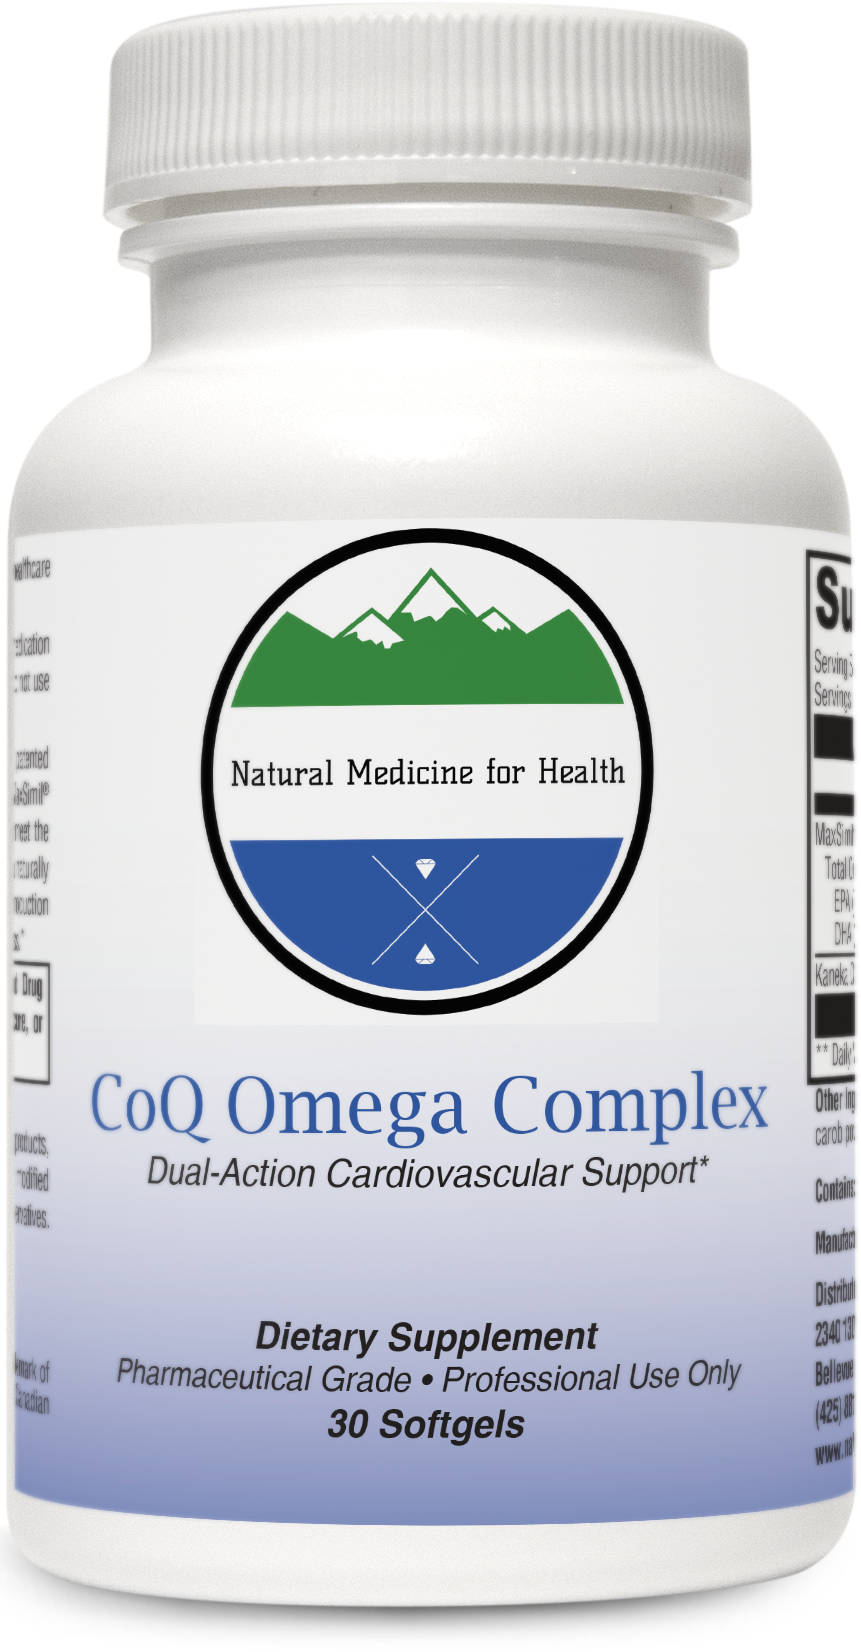 Natural Medicine for Health, CoQ Omega Complex 30 Softgels